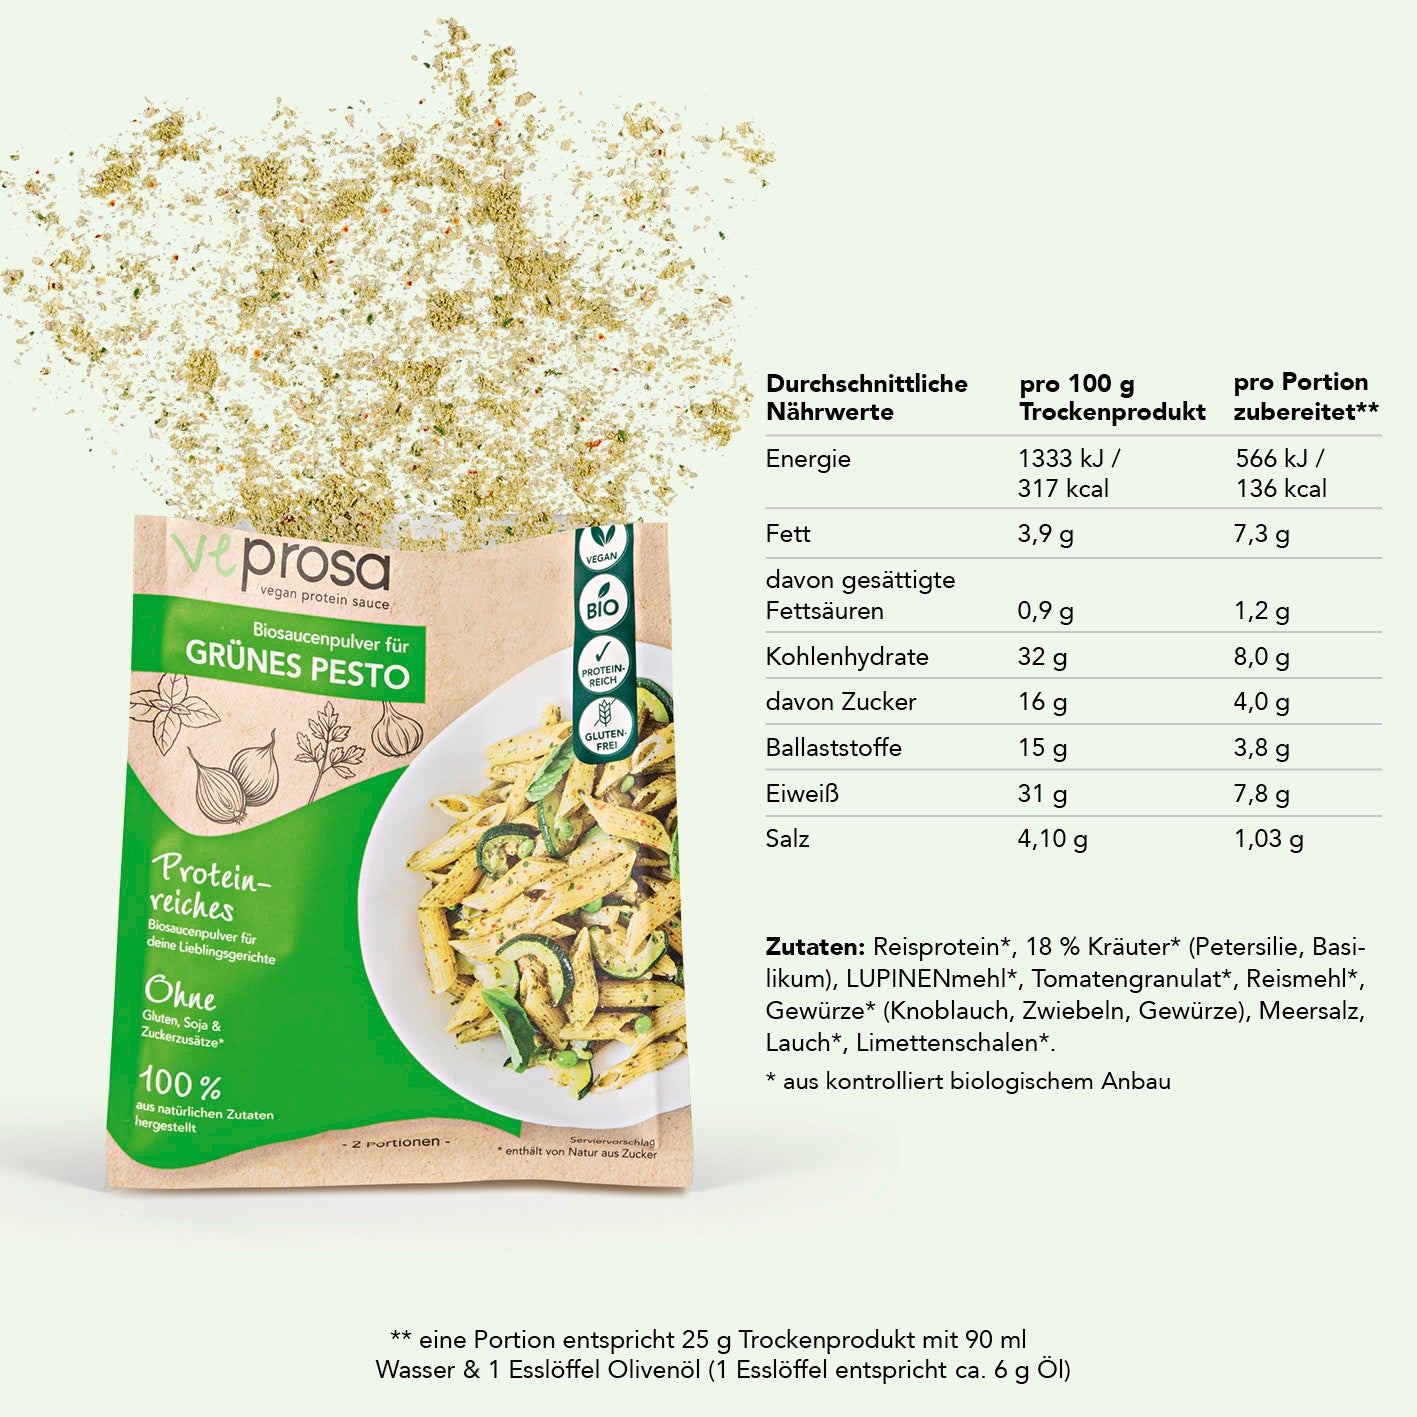 vegan protein sauce Biosaucenpulver für grünes Pesto - 4er-Set (4x 50 g)